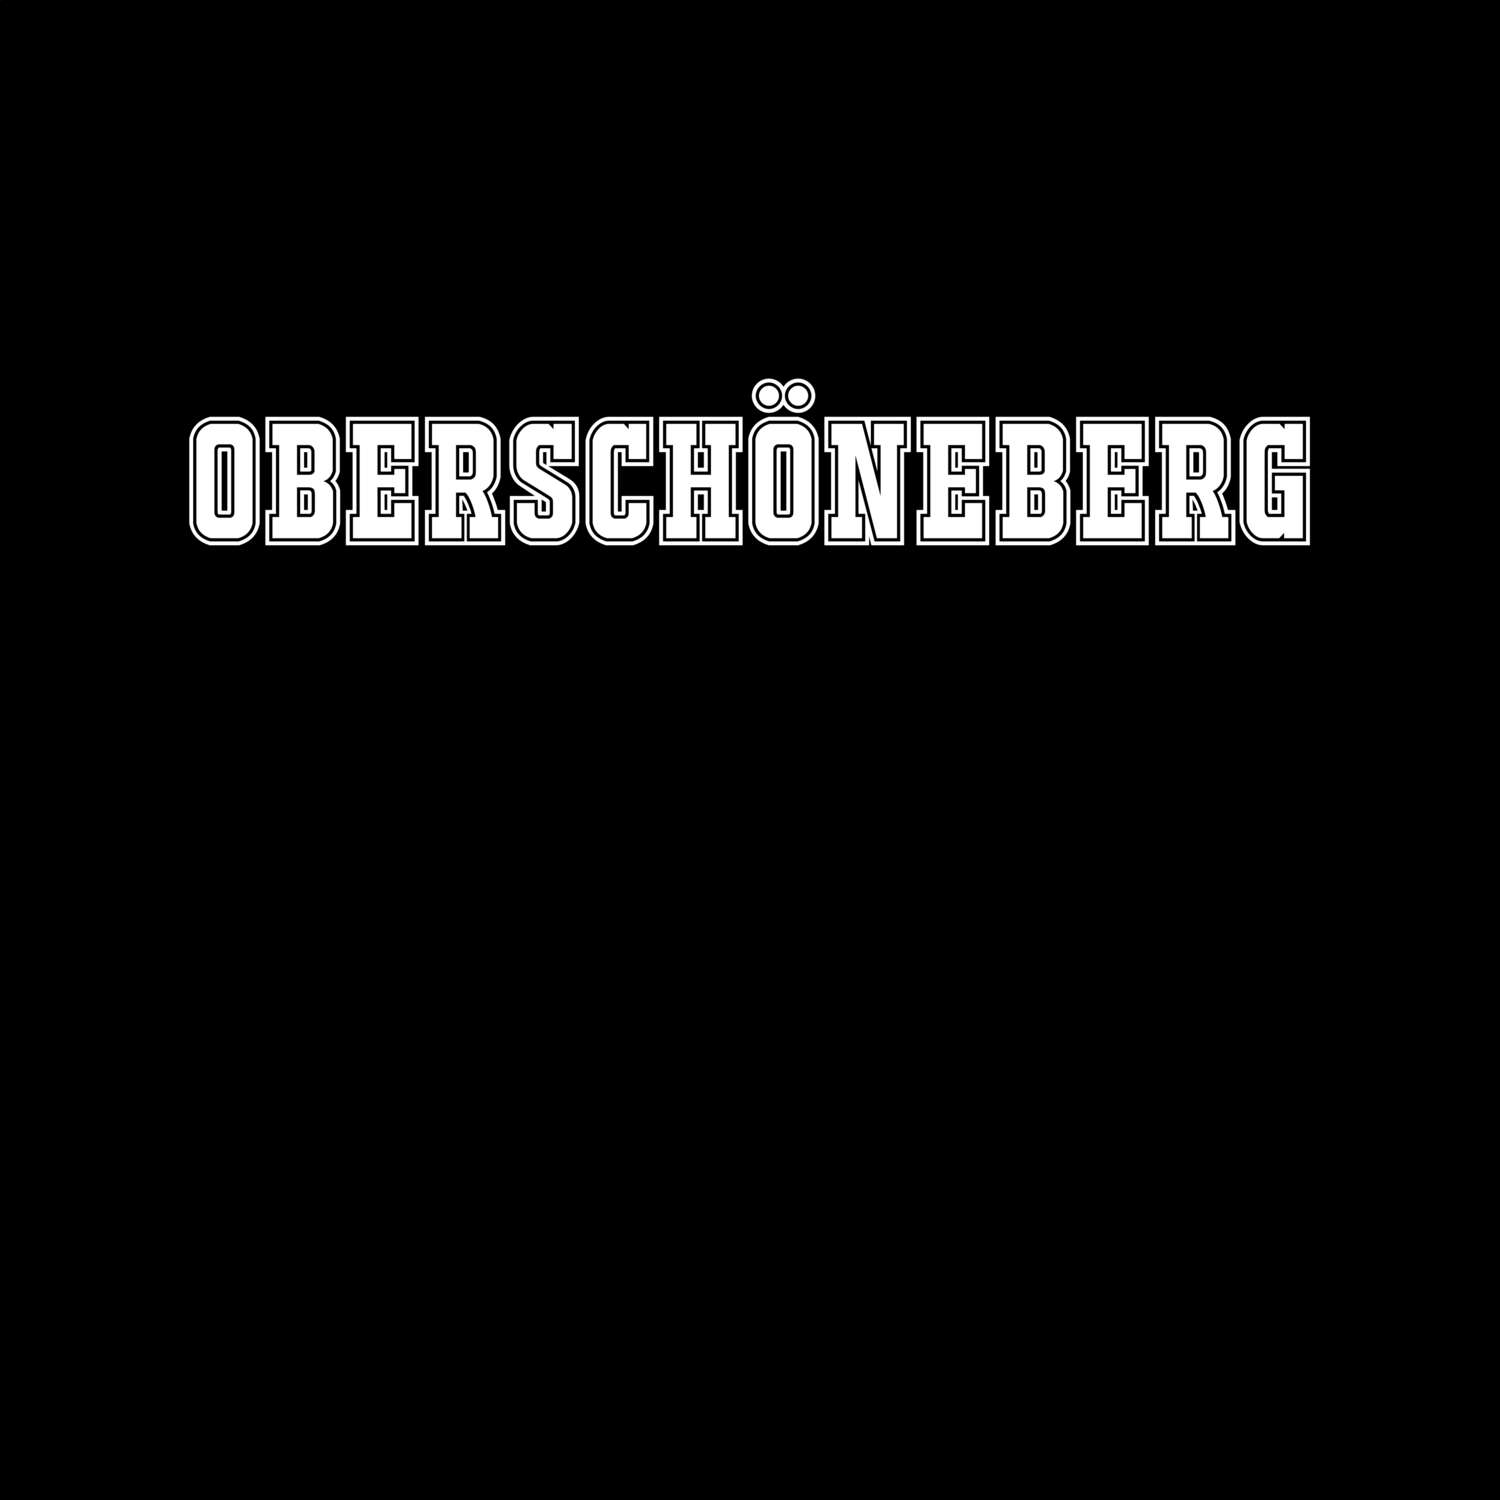 Oberschöneberg T-Shirt »Classic«